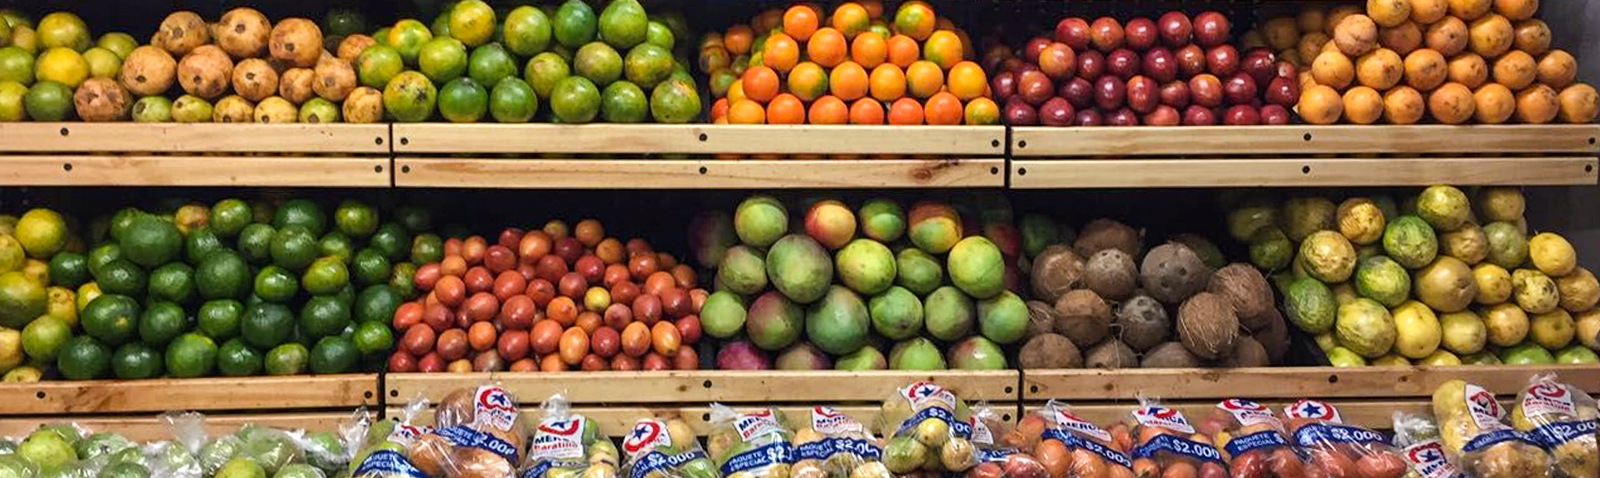 ¿Cómo mejorar la distribución de frutas y verduras en Colombia en tiempos de crisis?